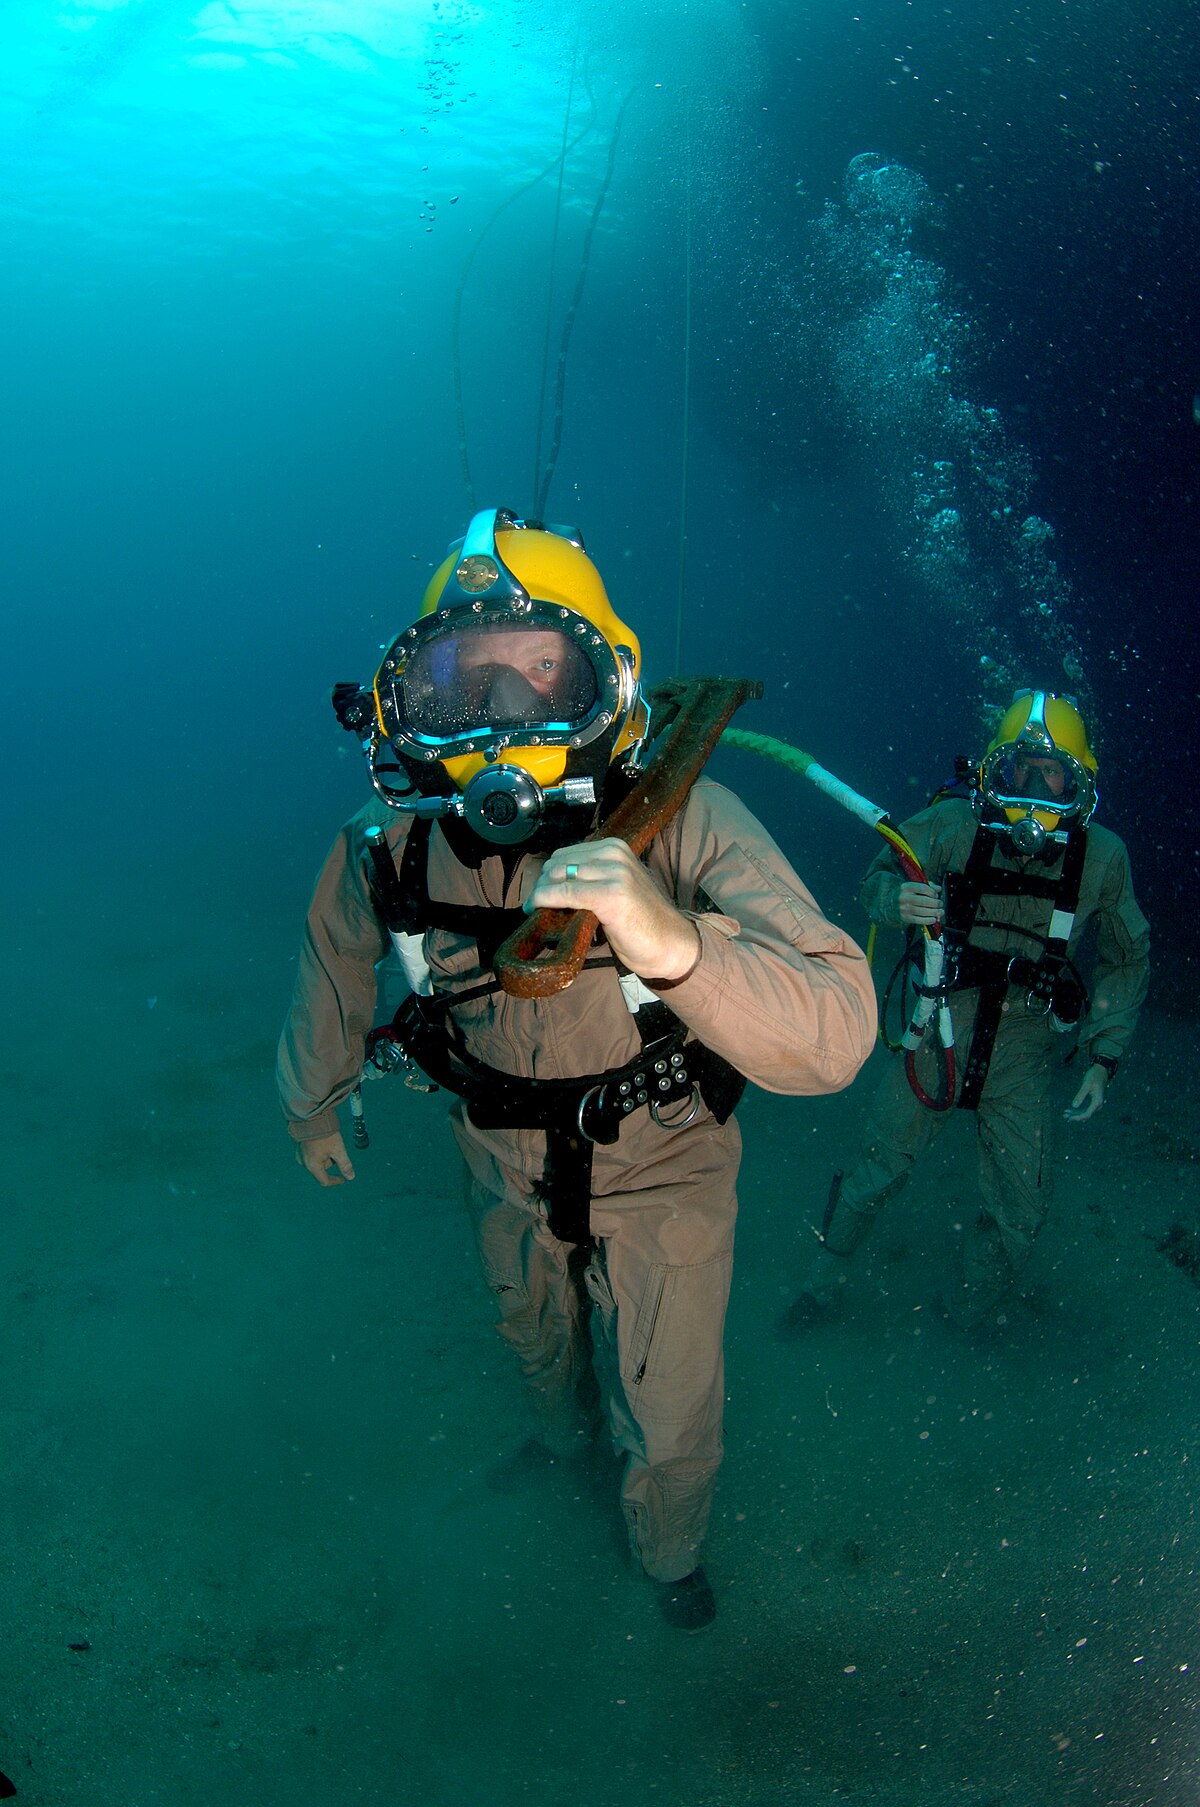 送気式潜水 - Wikipedia